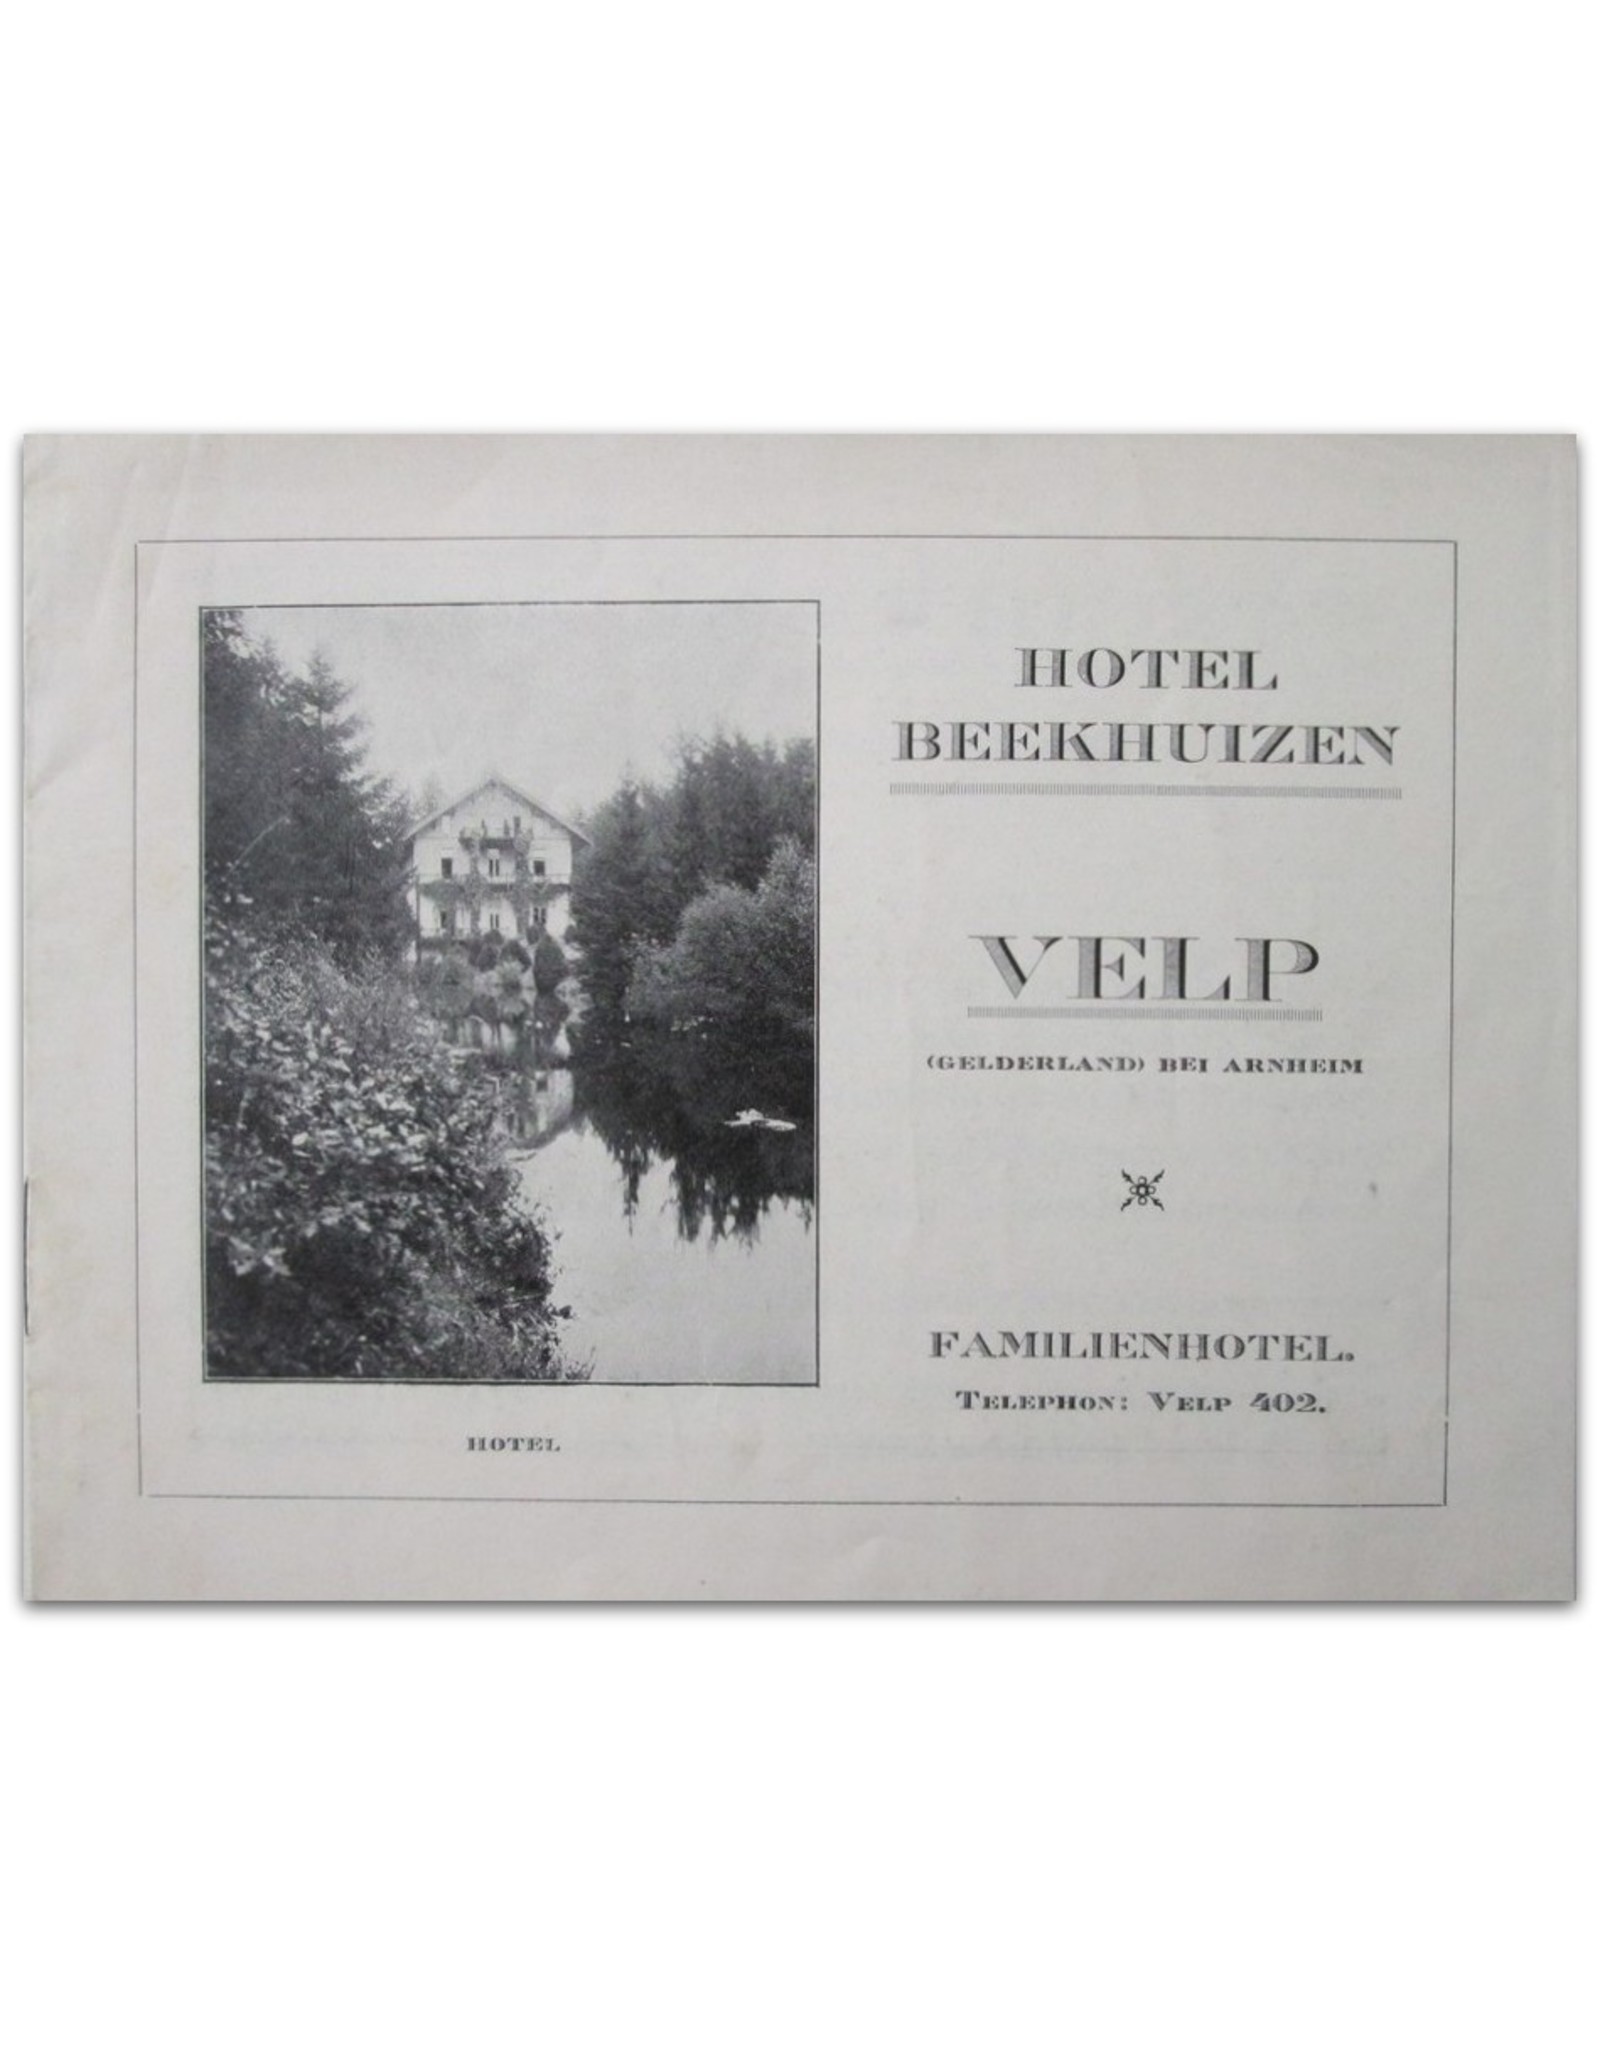 [Efemera] - Hotel Beekhuizen Velp (Gelderland) bei Arnheim